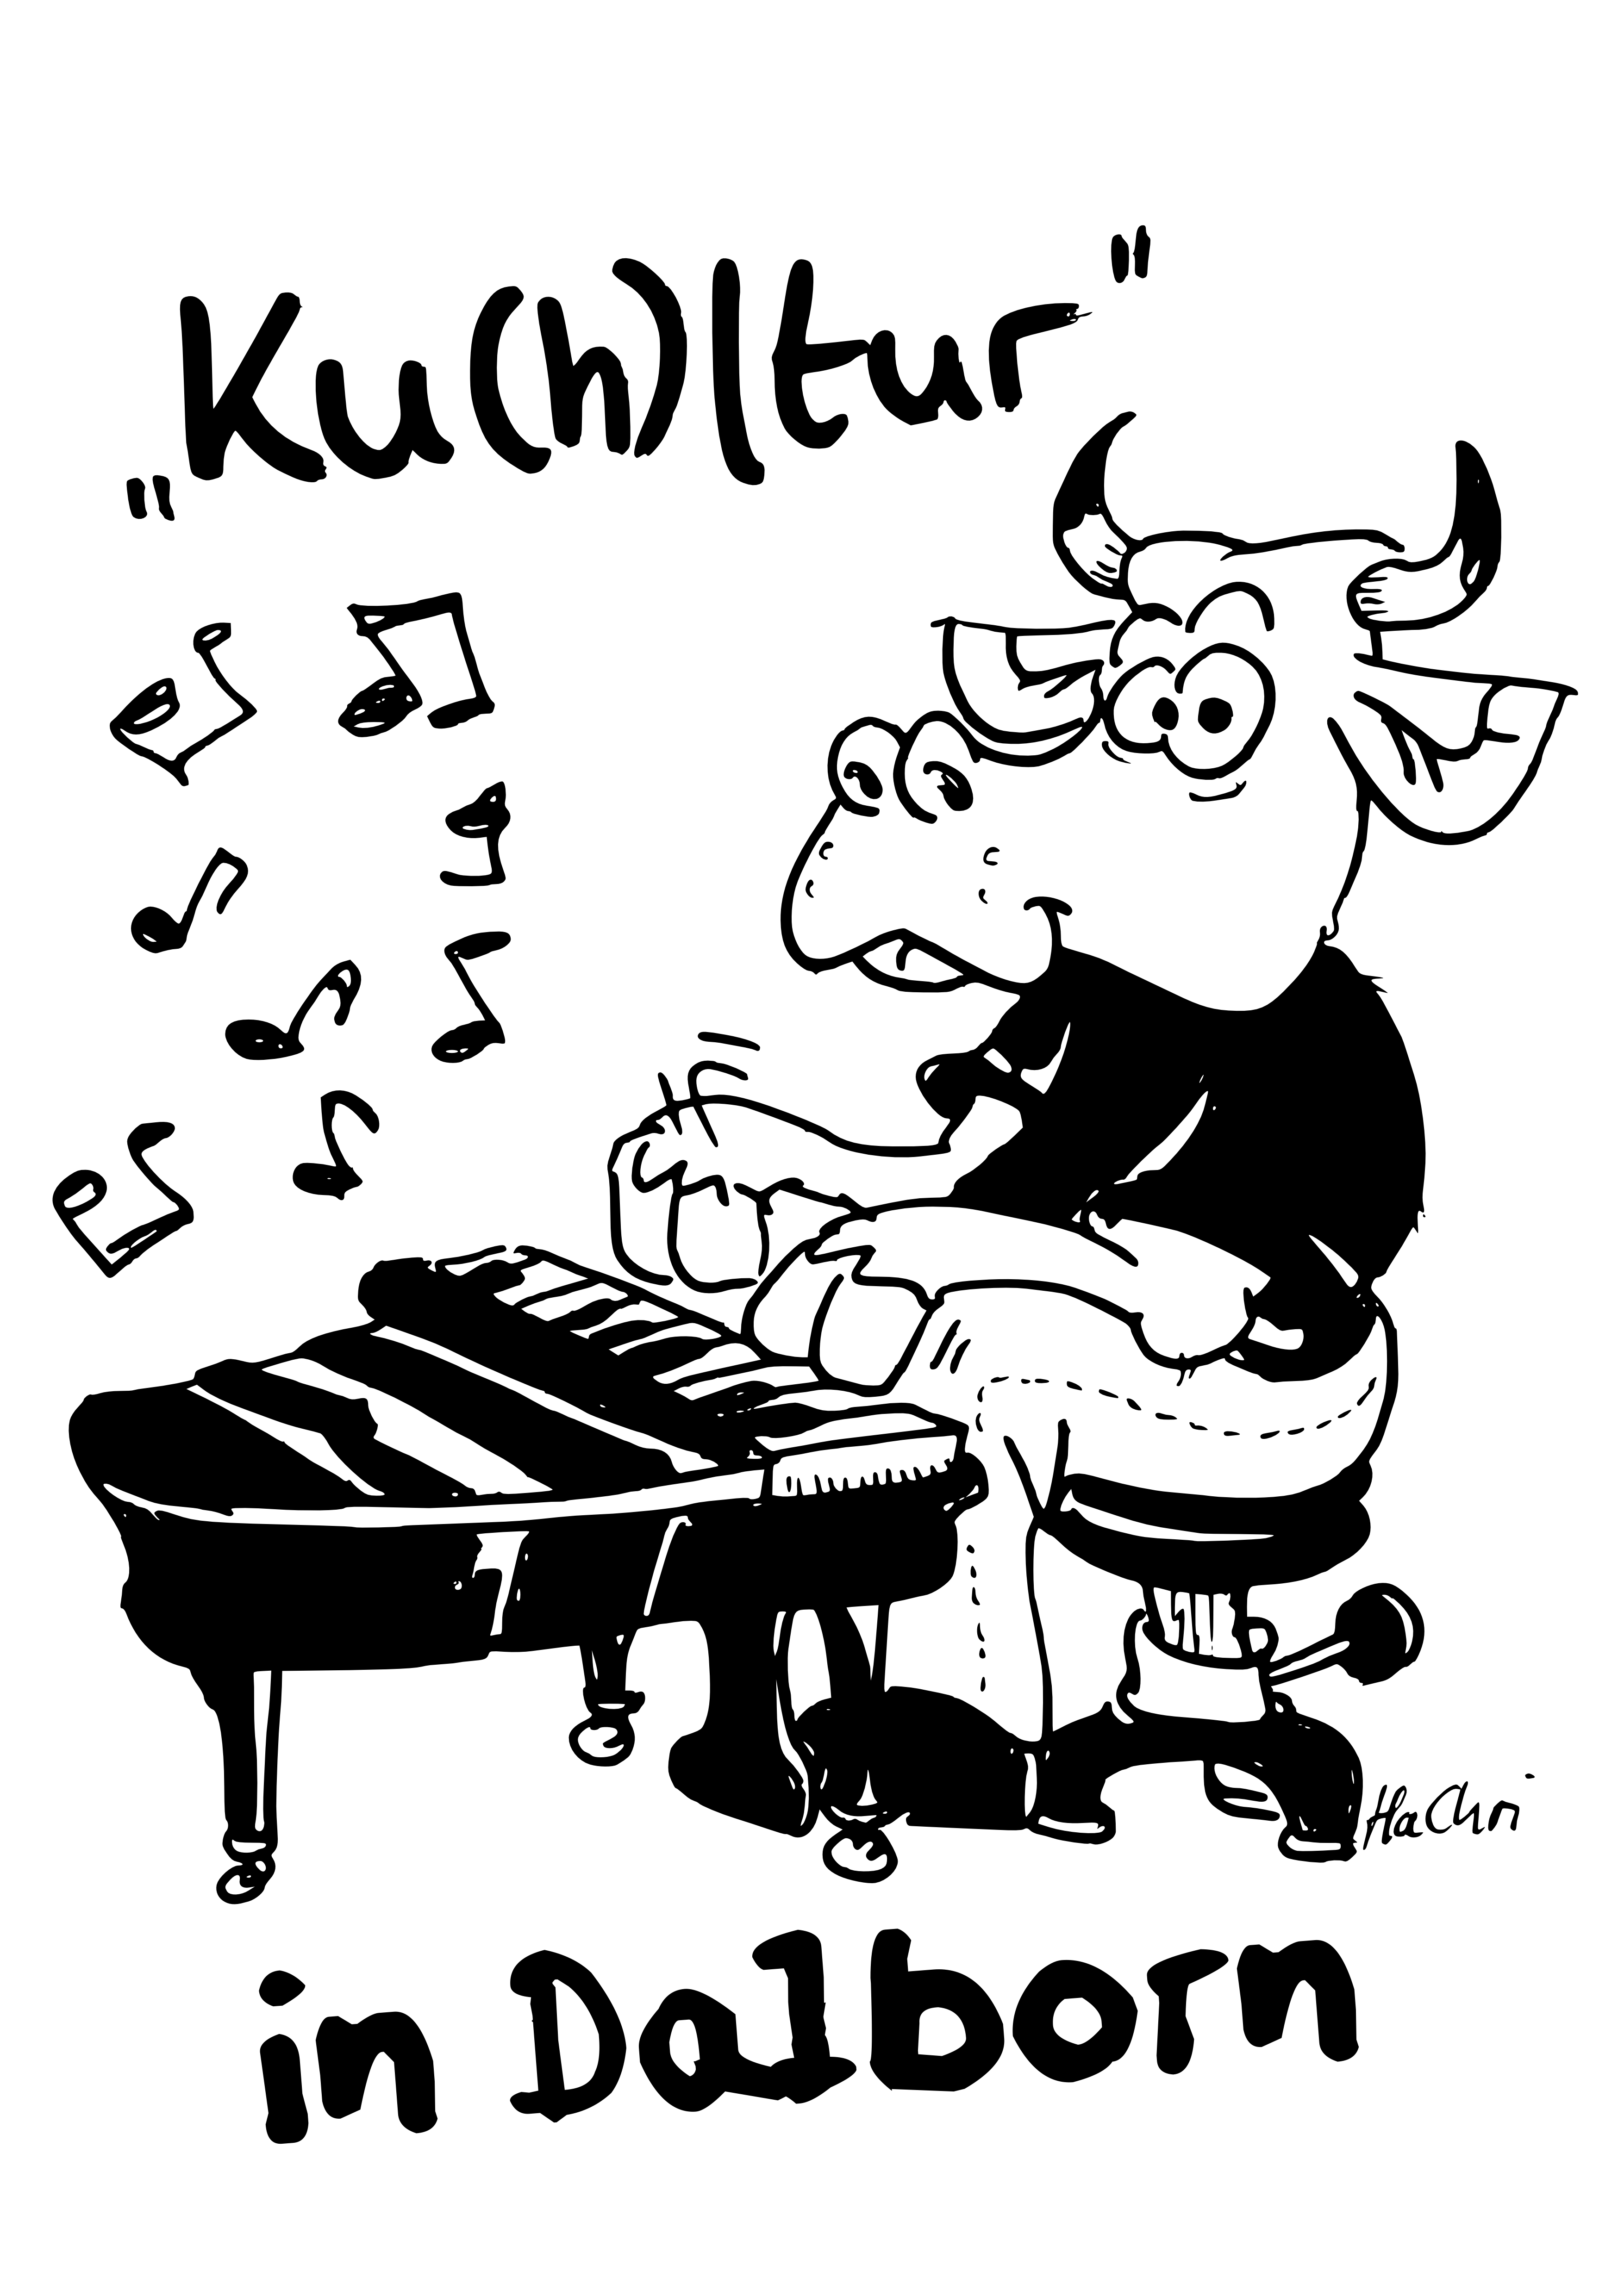 (c) Kulturkneipedalborn.wordpress.com